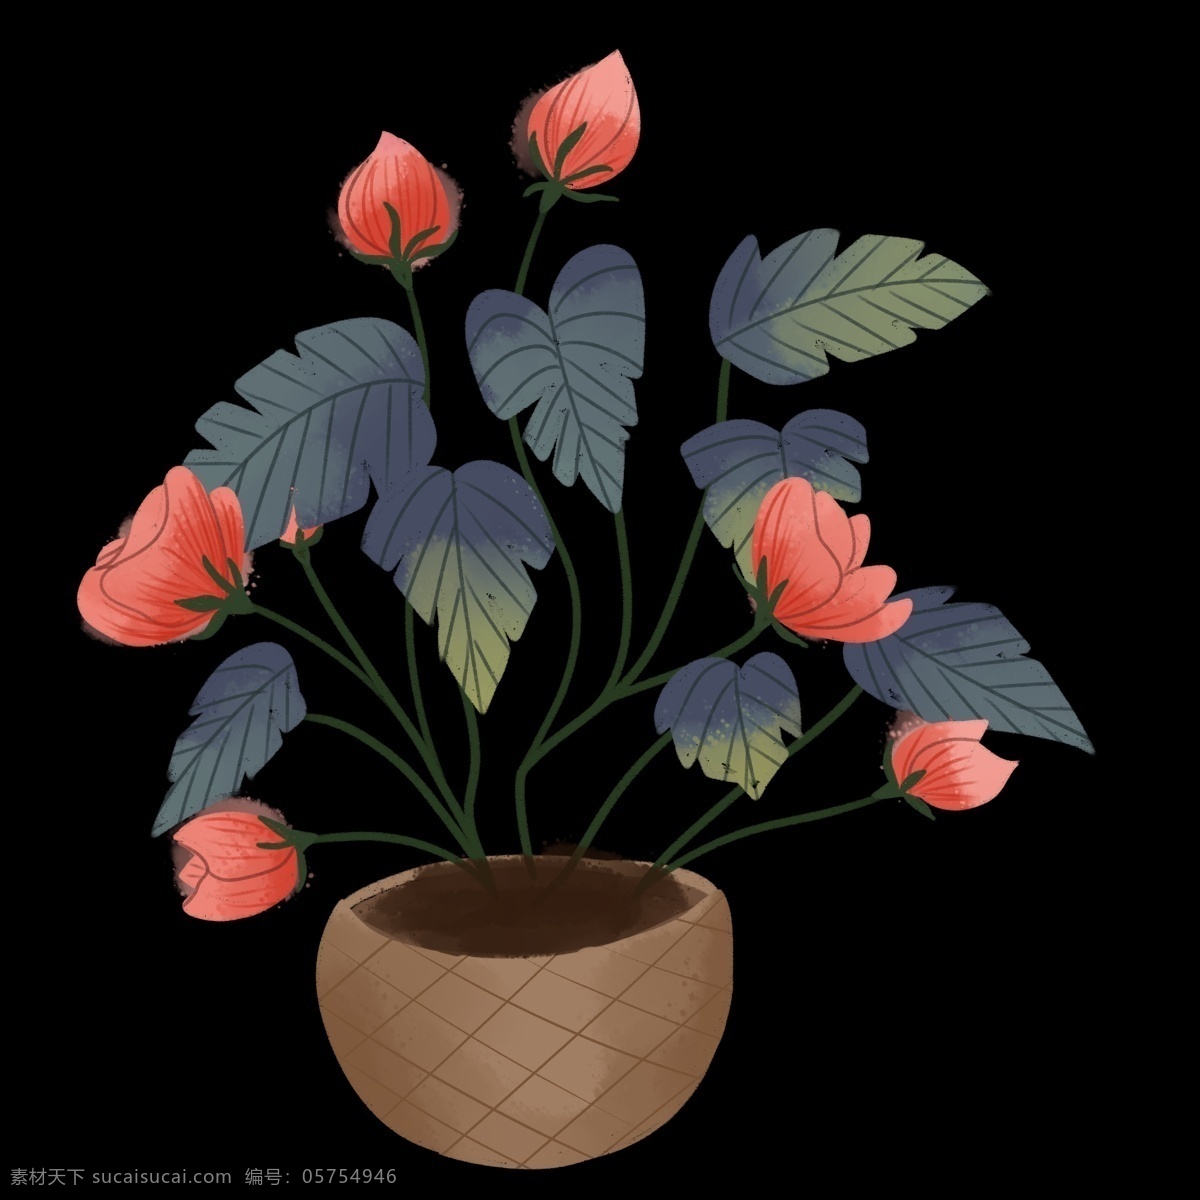 盆栽 蔷薇 花朵 品红 绿植 植物 科属 绿色 枝头 花骨朵 含苞待放 叶子 花盆 器皿 蓝色 墨色 一品红